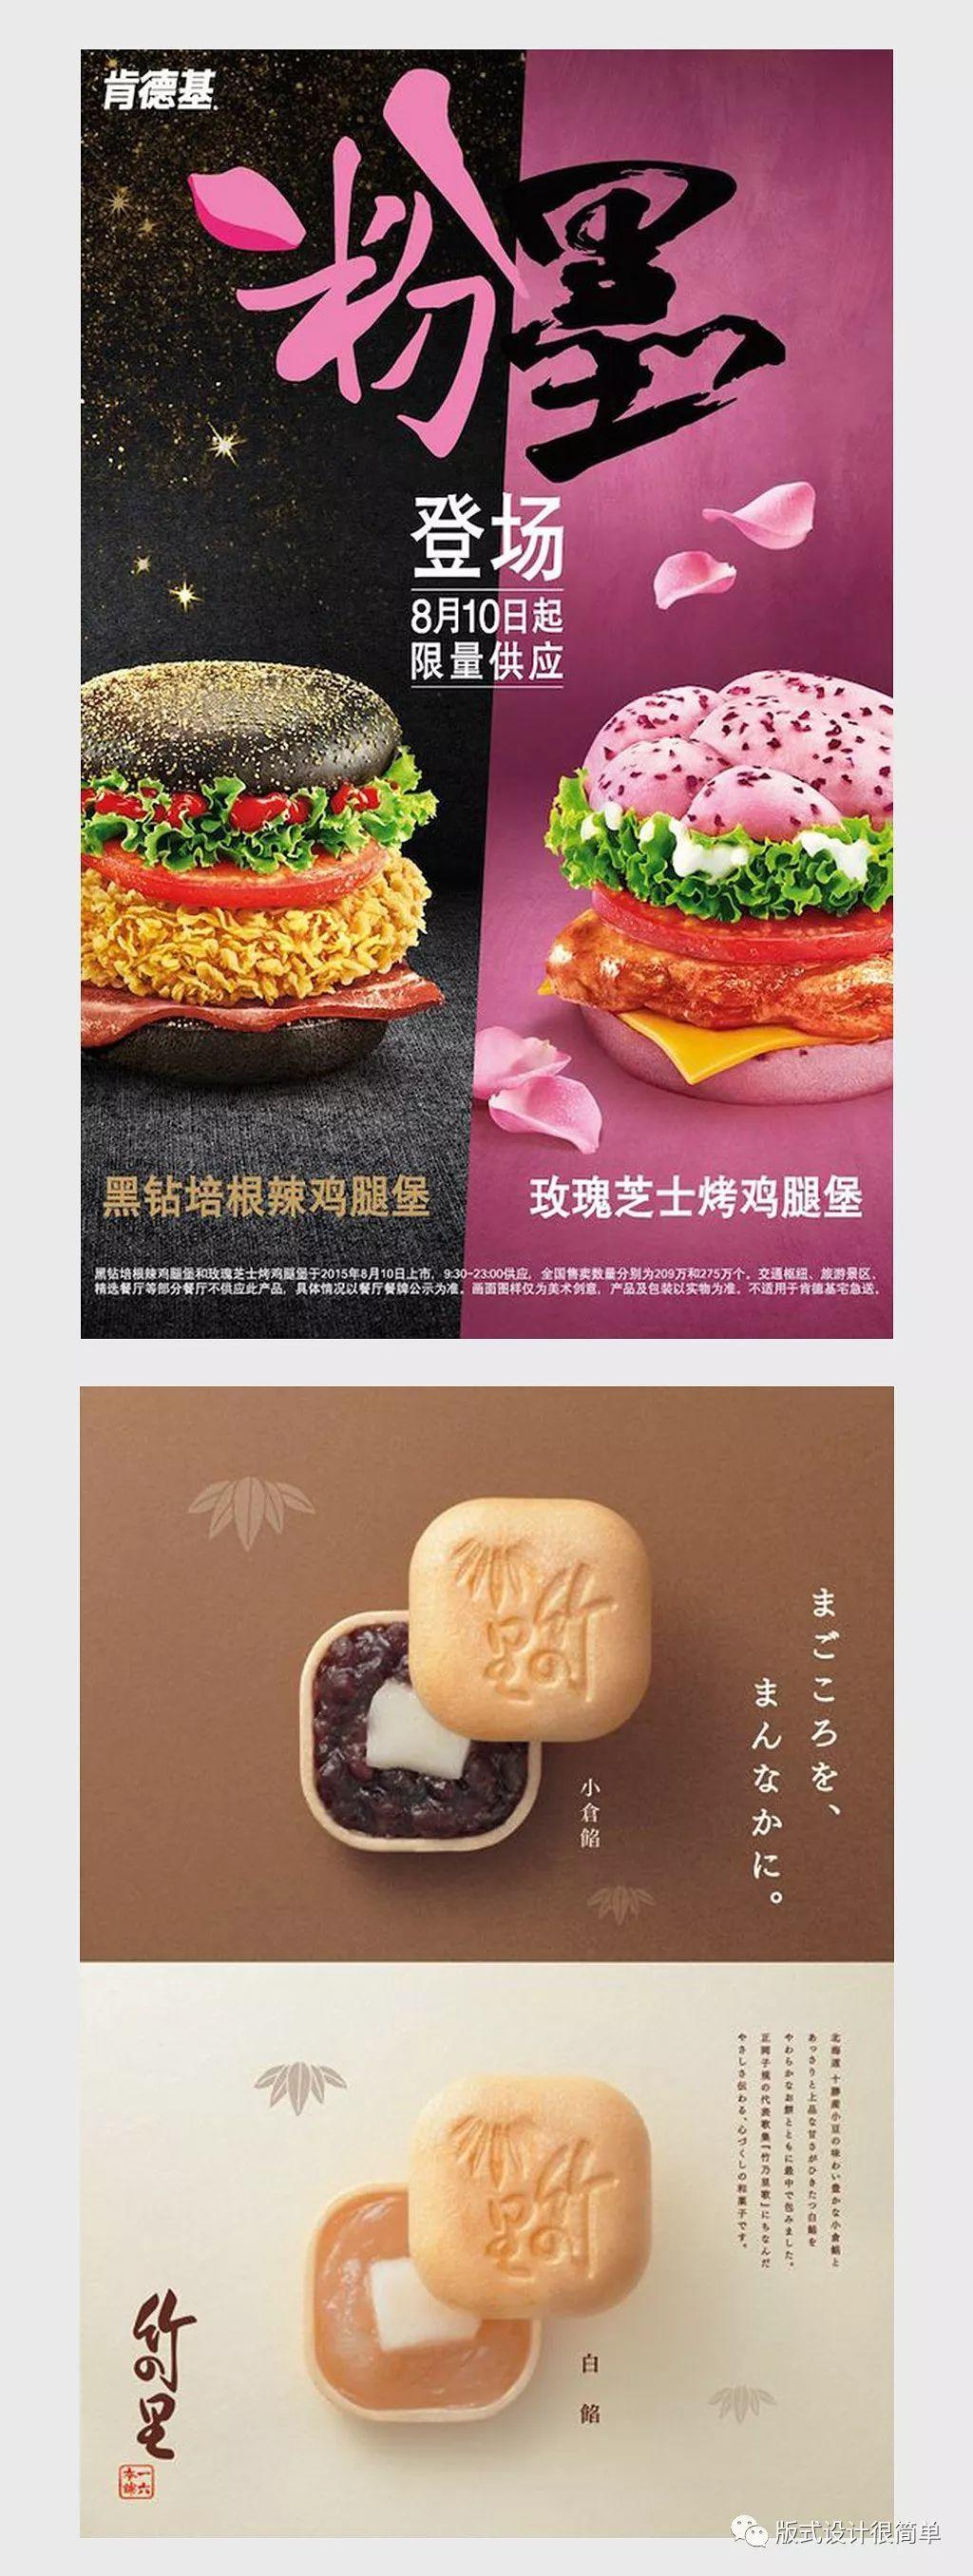 中秋節月餅與漢堡包海報設計